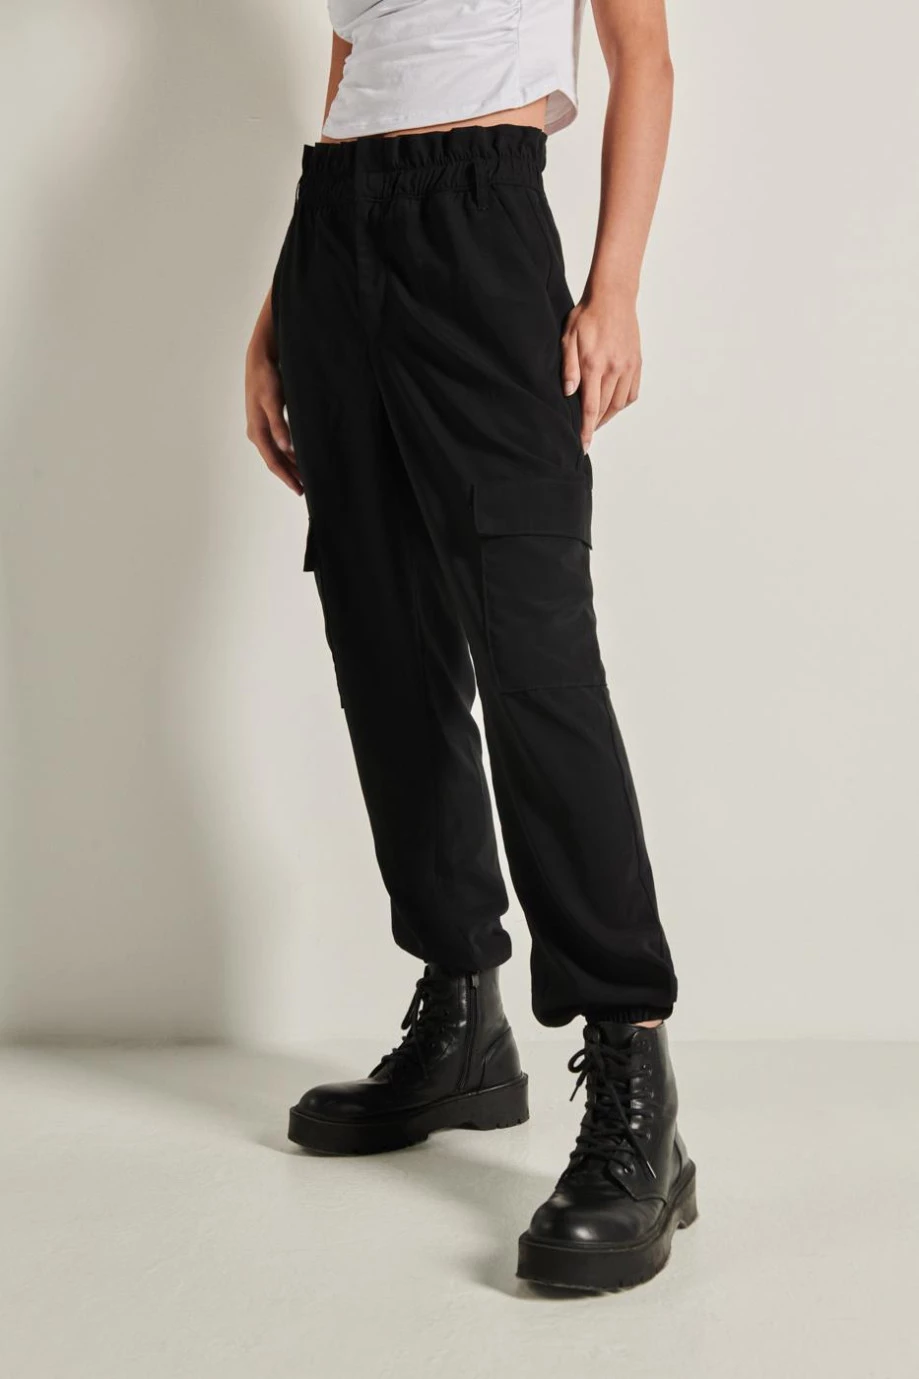 Pantalón negro paper bag cargo con cintura elástica y bolsillos laterales